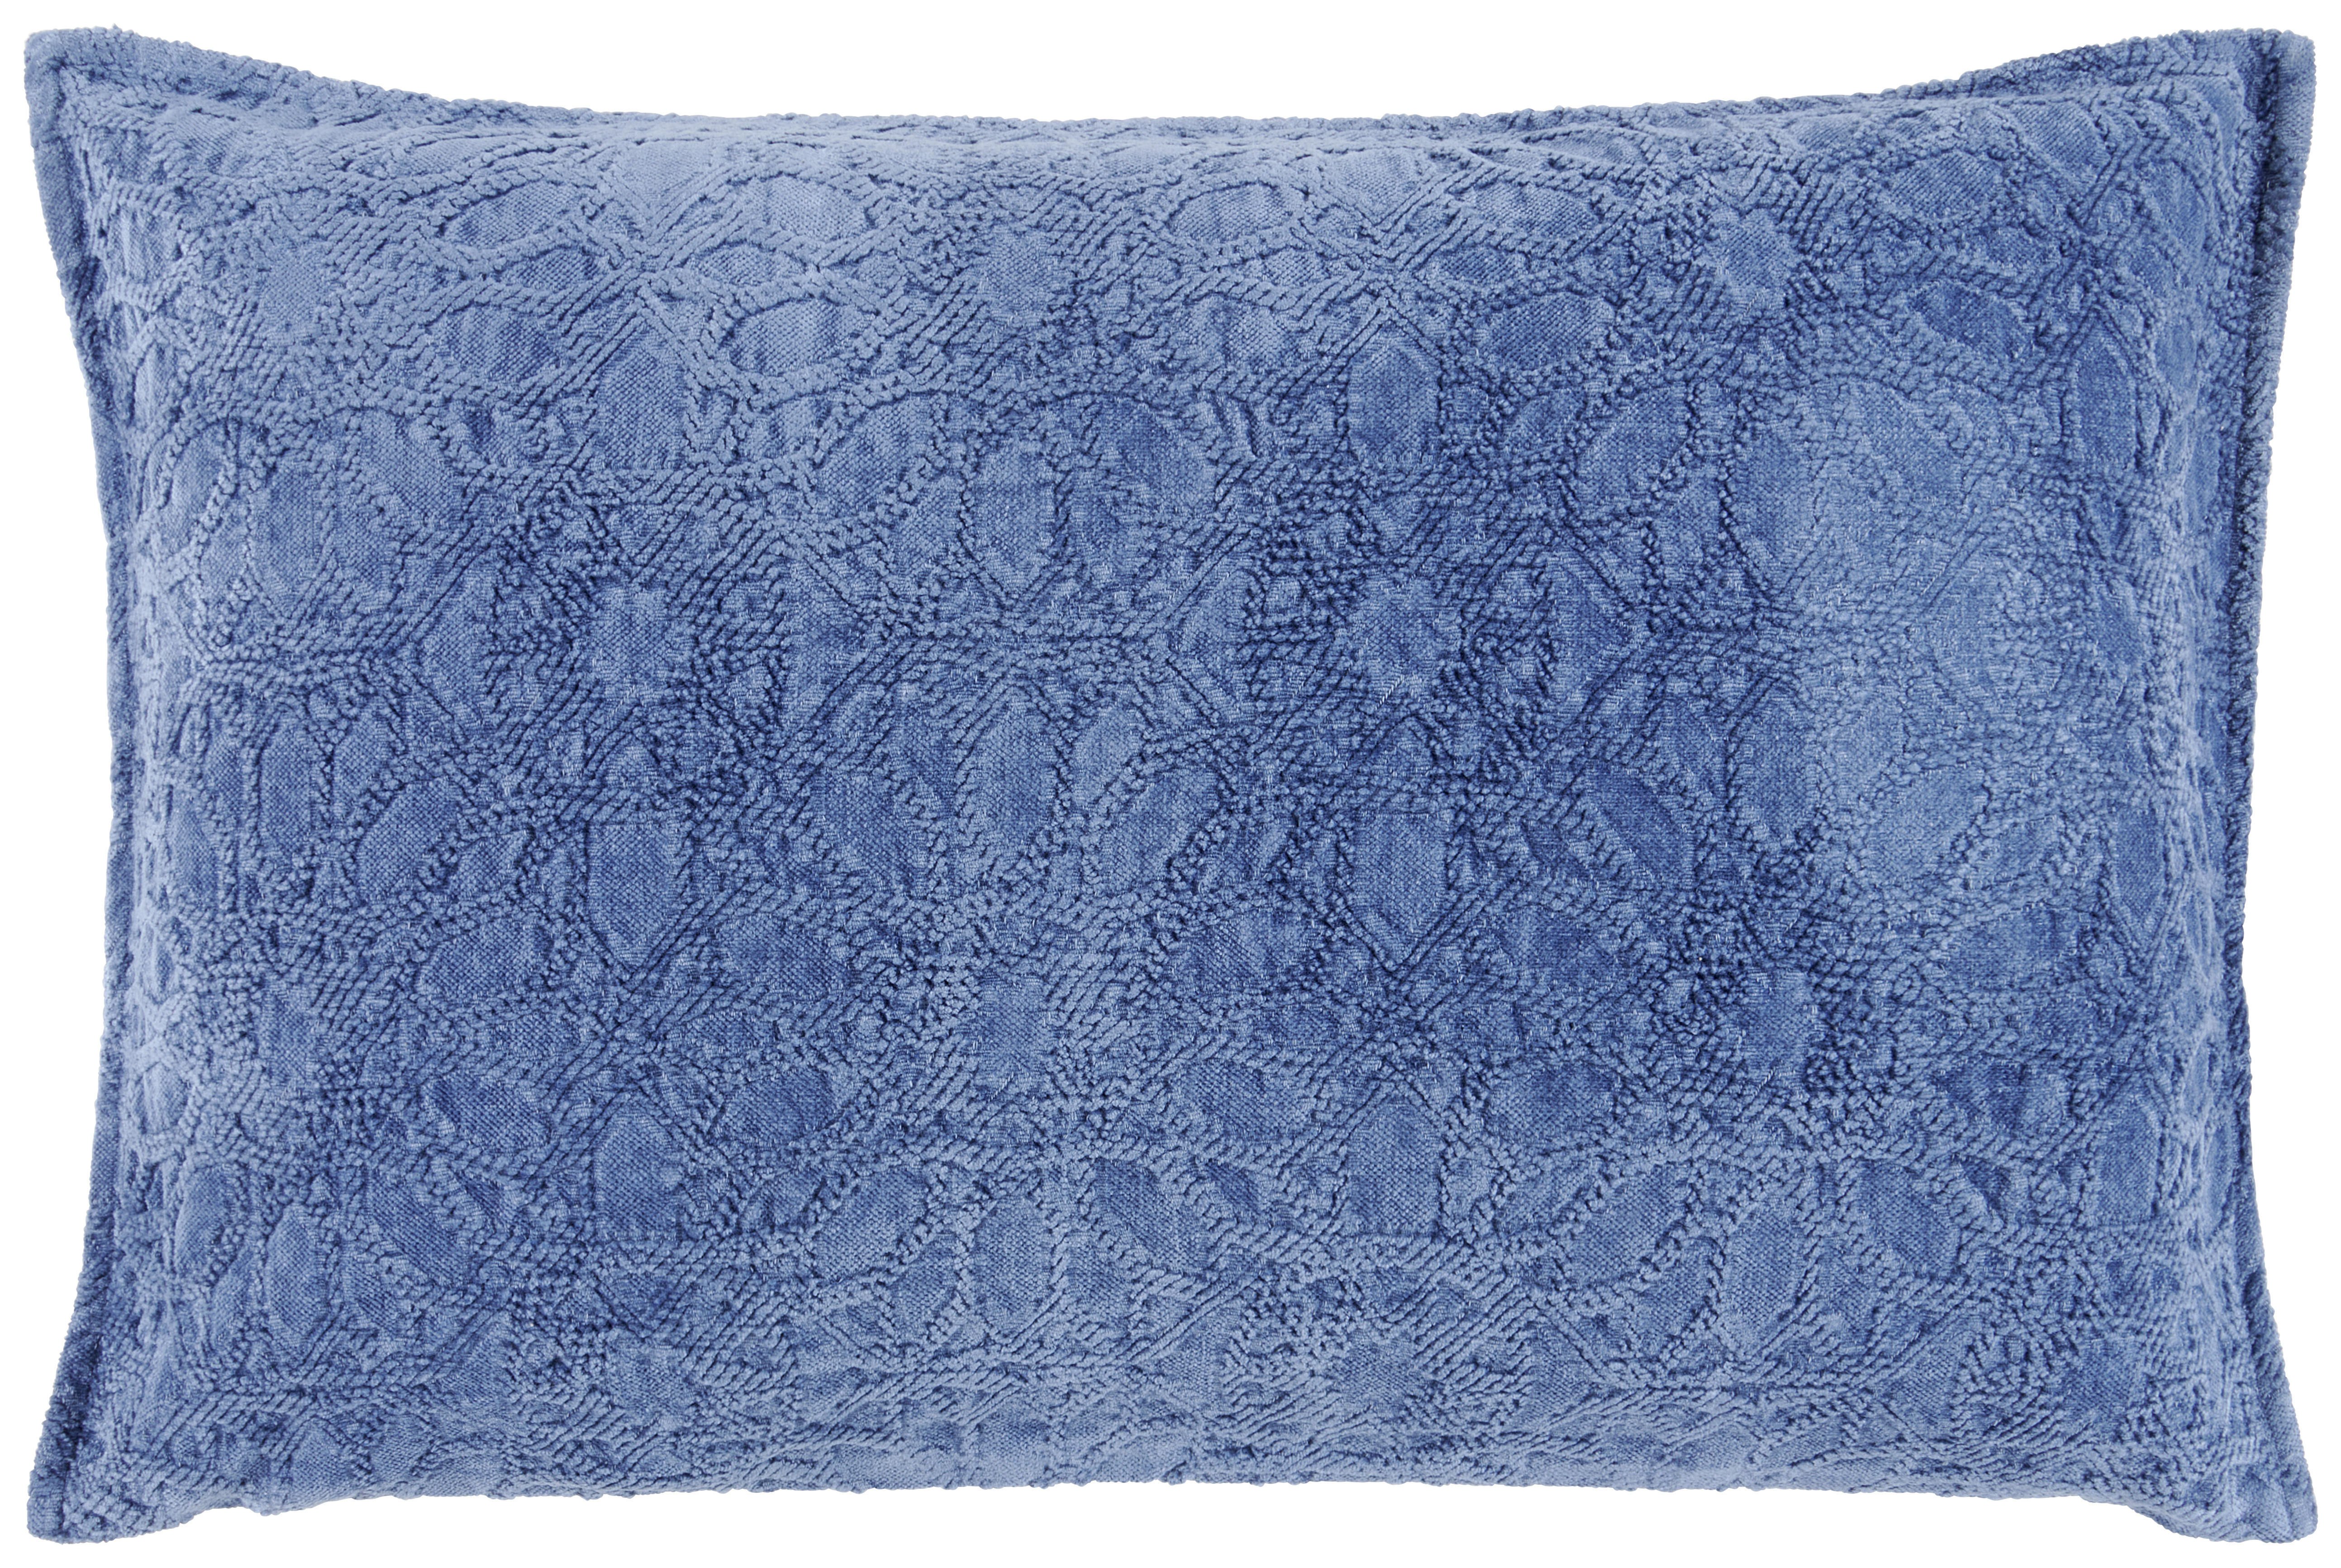 PRYDNADSKUDDE 40/60 cm  - blå, Lifestyle, textil (40/60cm) - Novel